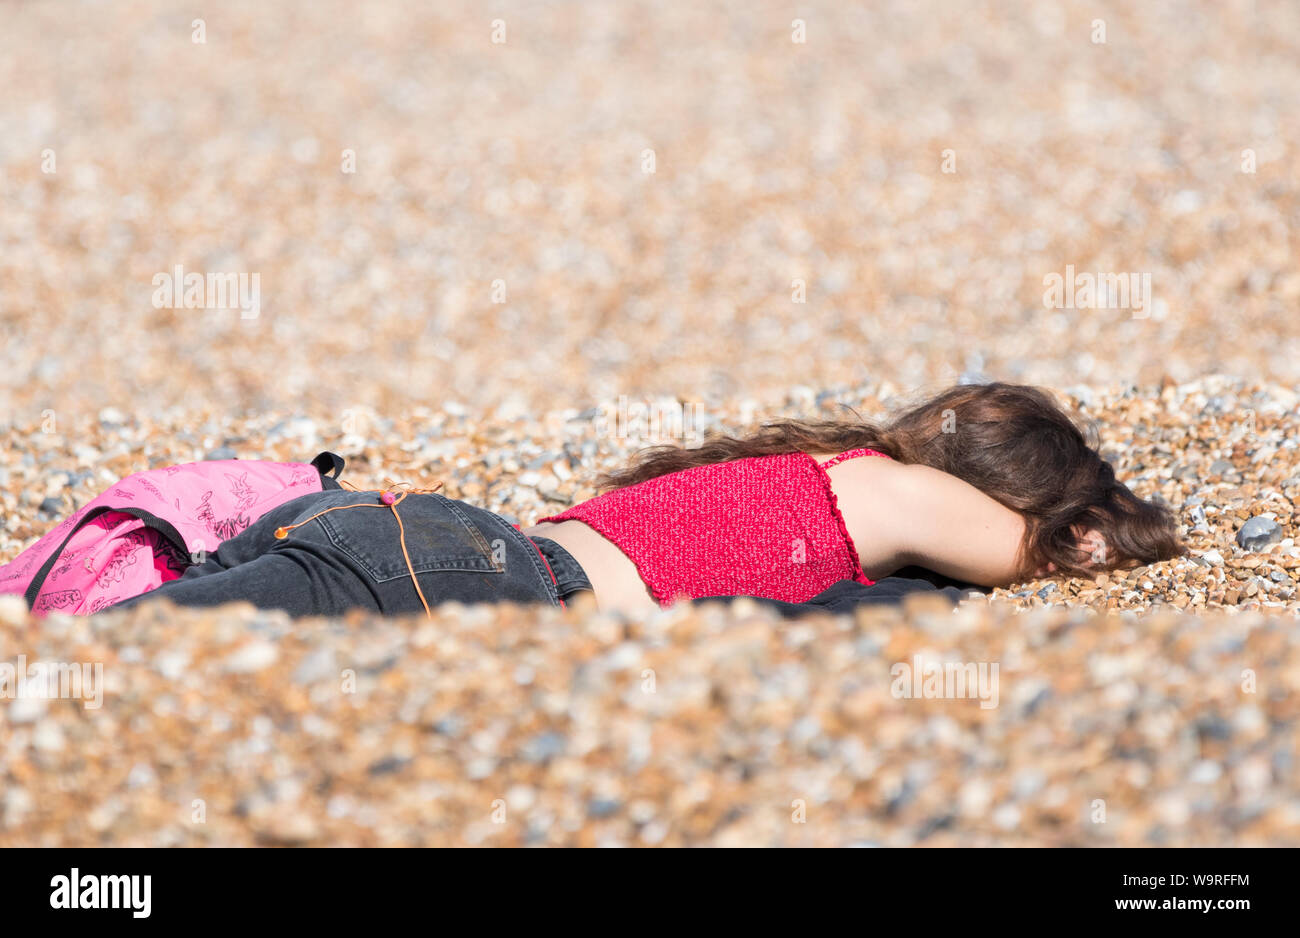 Junge Frau mit dem Gesicht nach unten im Kies am Strand in der Sonne. Junge weibliche Festlegung in der Sonne an einem warmen Frühlingstag in Großbritannien. Stockfoto